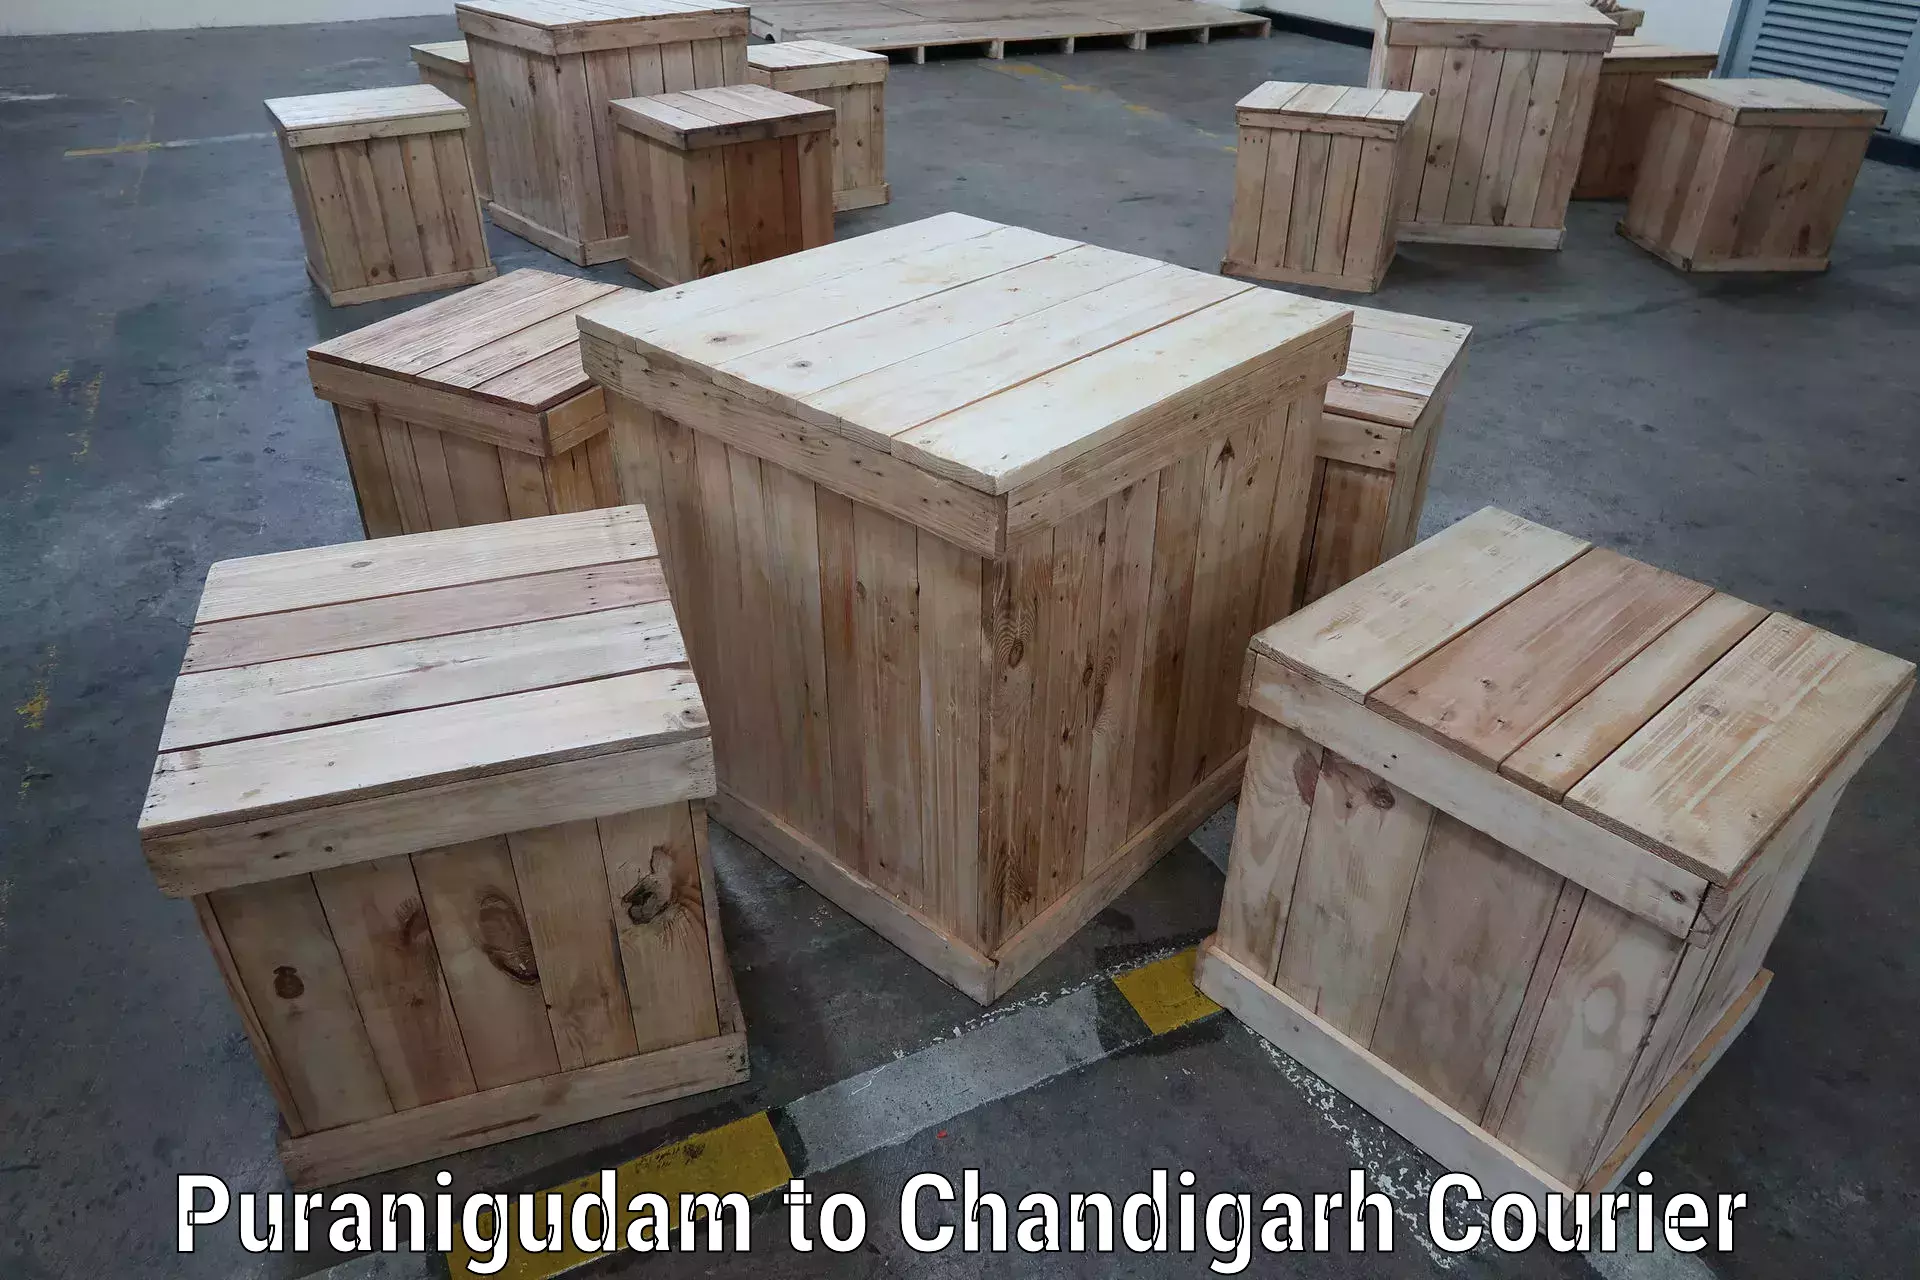 Business courier solutions Puranigudam to Chandigarh